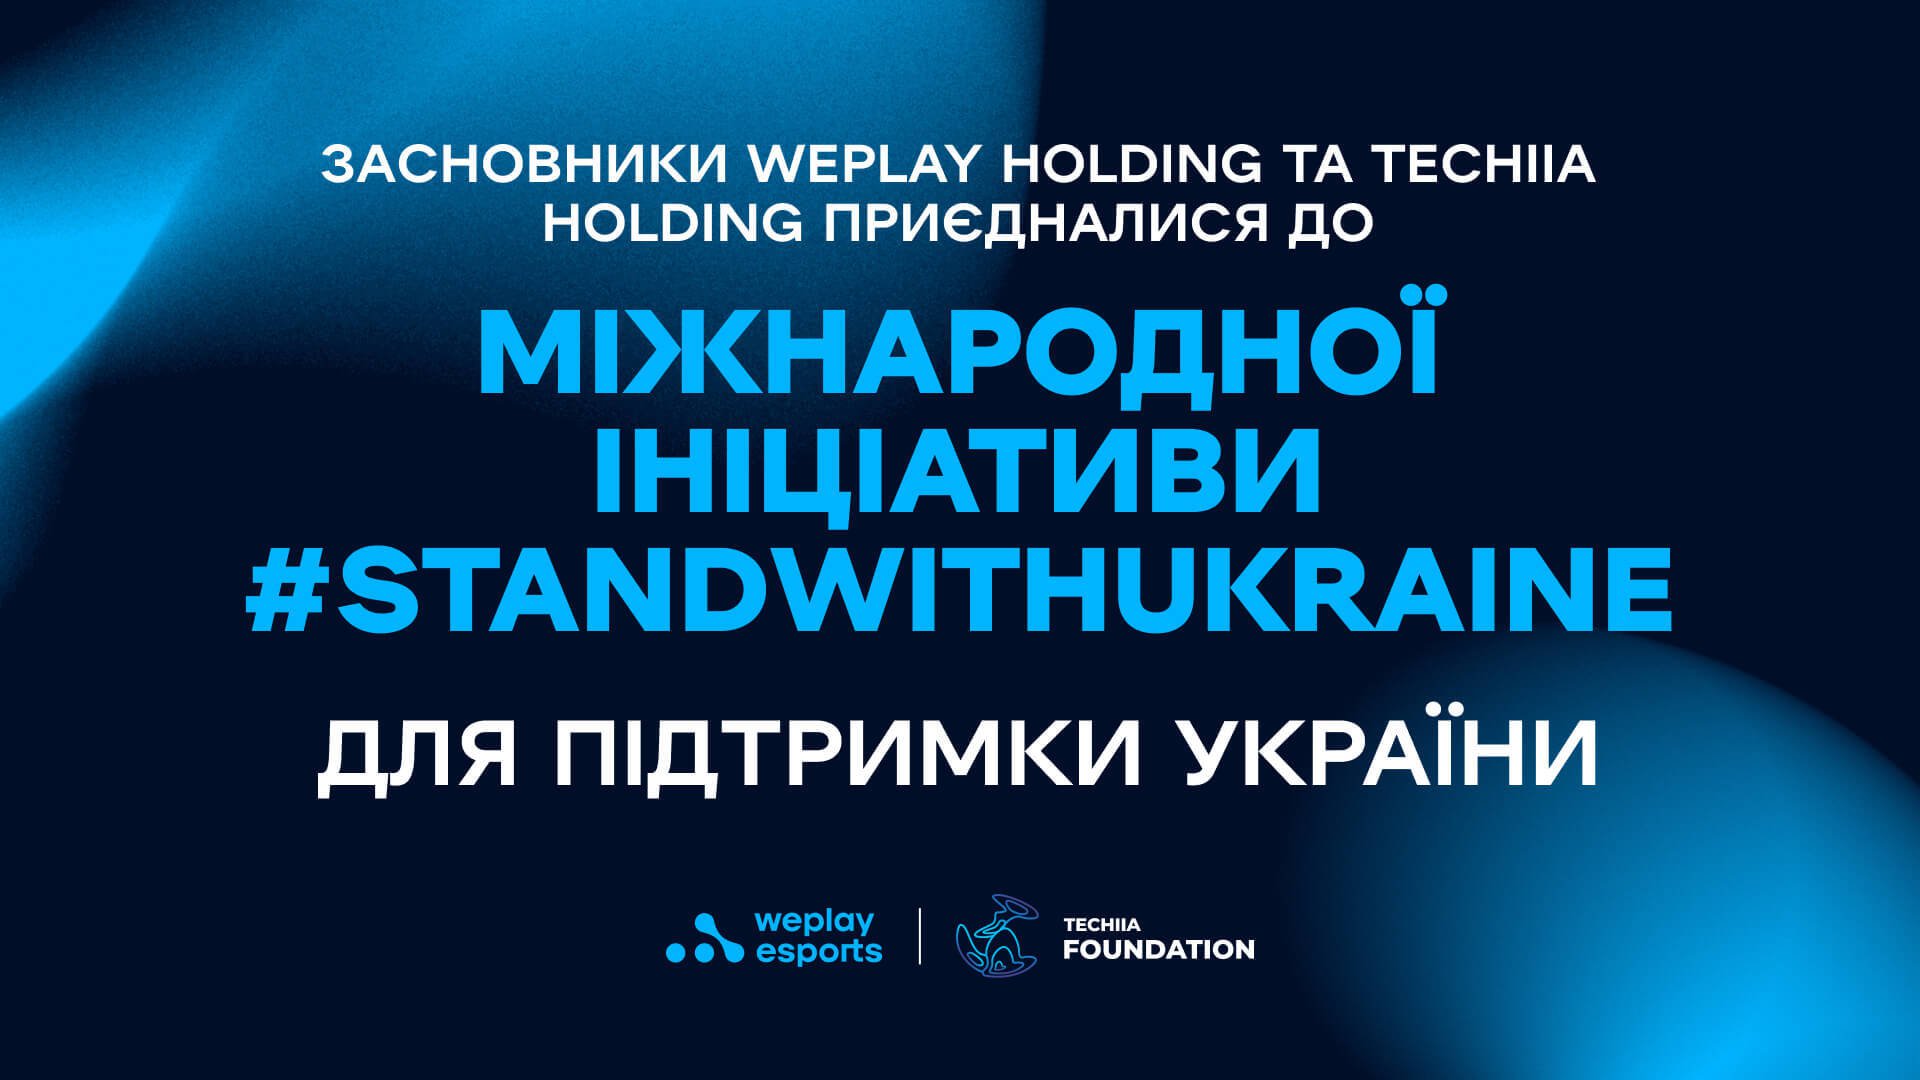 Засновники WePlay Holding та TECHIIA Holding приєдналися до міжнародної ініціативи #StandwithUkraine на підтримку України. Зображення: WePlay Holding